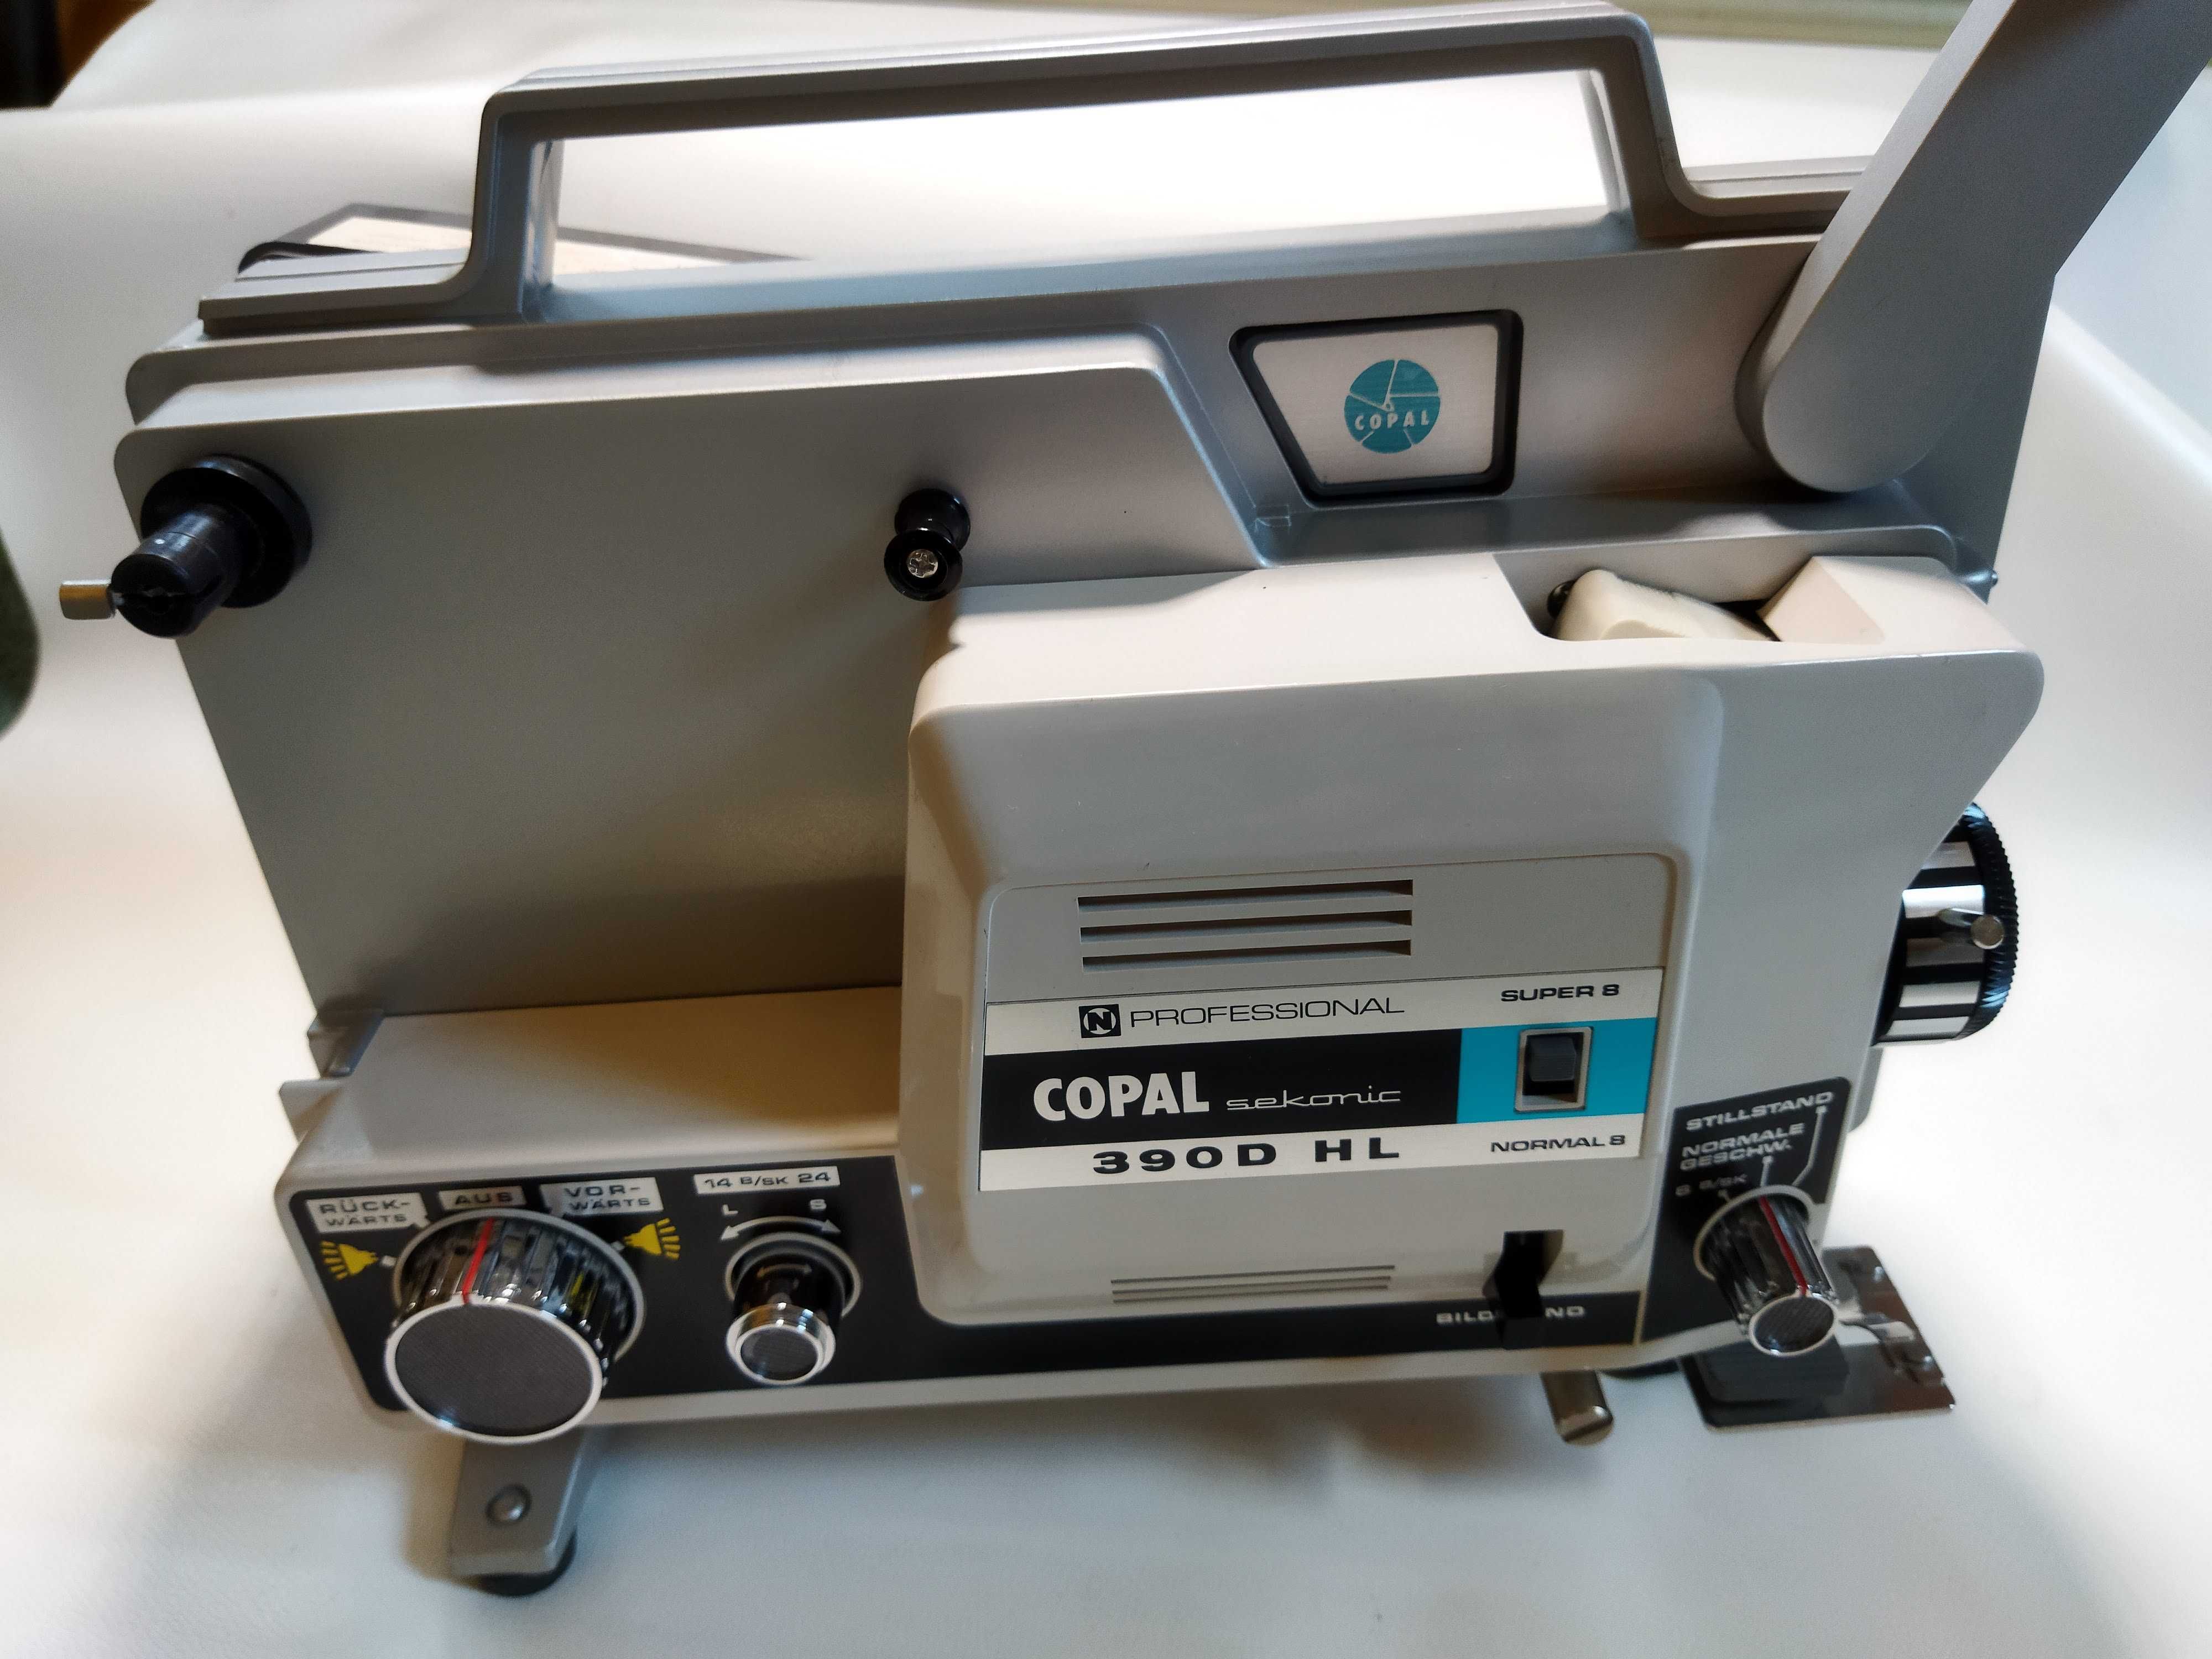 Projektor Filmowy 8mm Super 8 Copal Seconic 390D